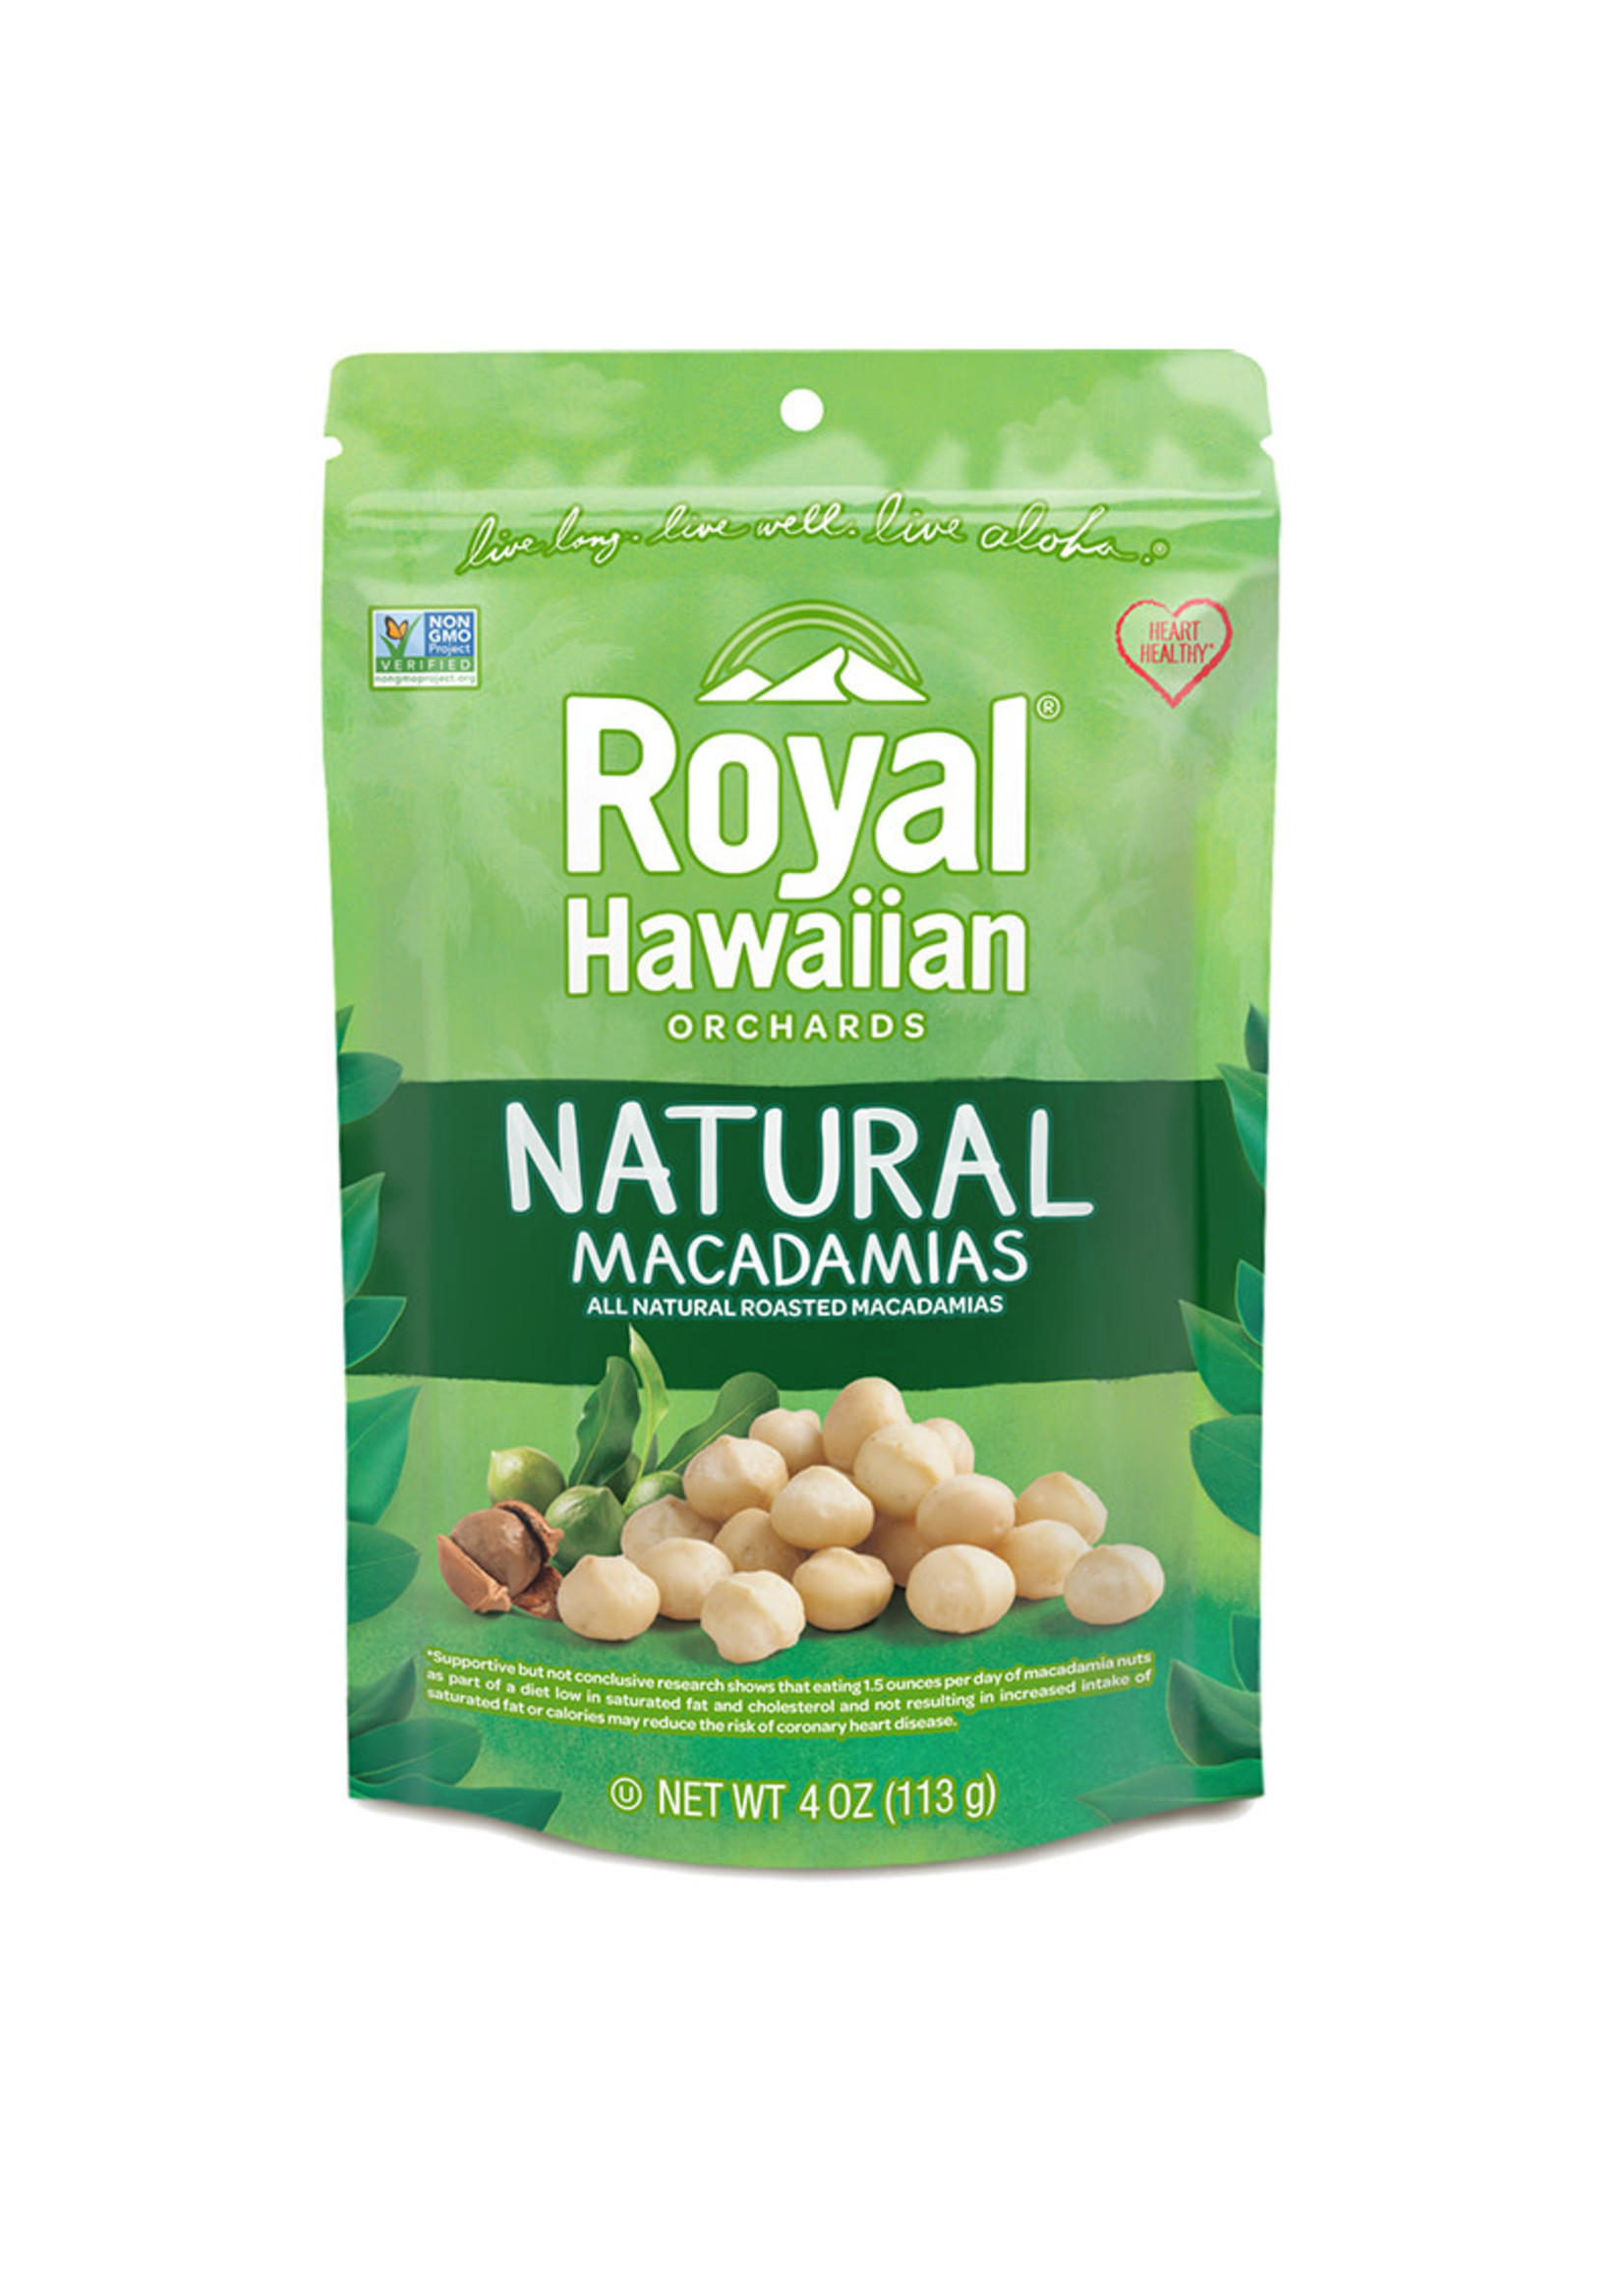 Royal Hawaiian Orchards Royal Hawaiian Orchards - Macadamia Nuts, Natural (142g)